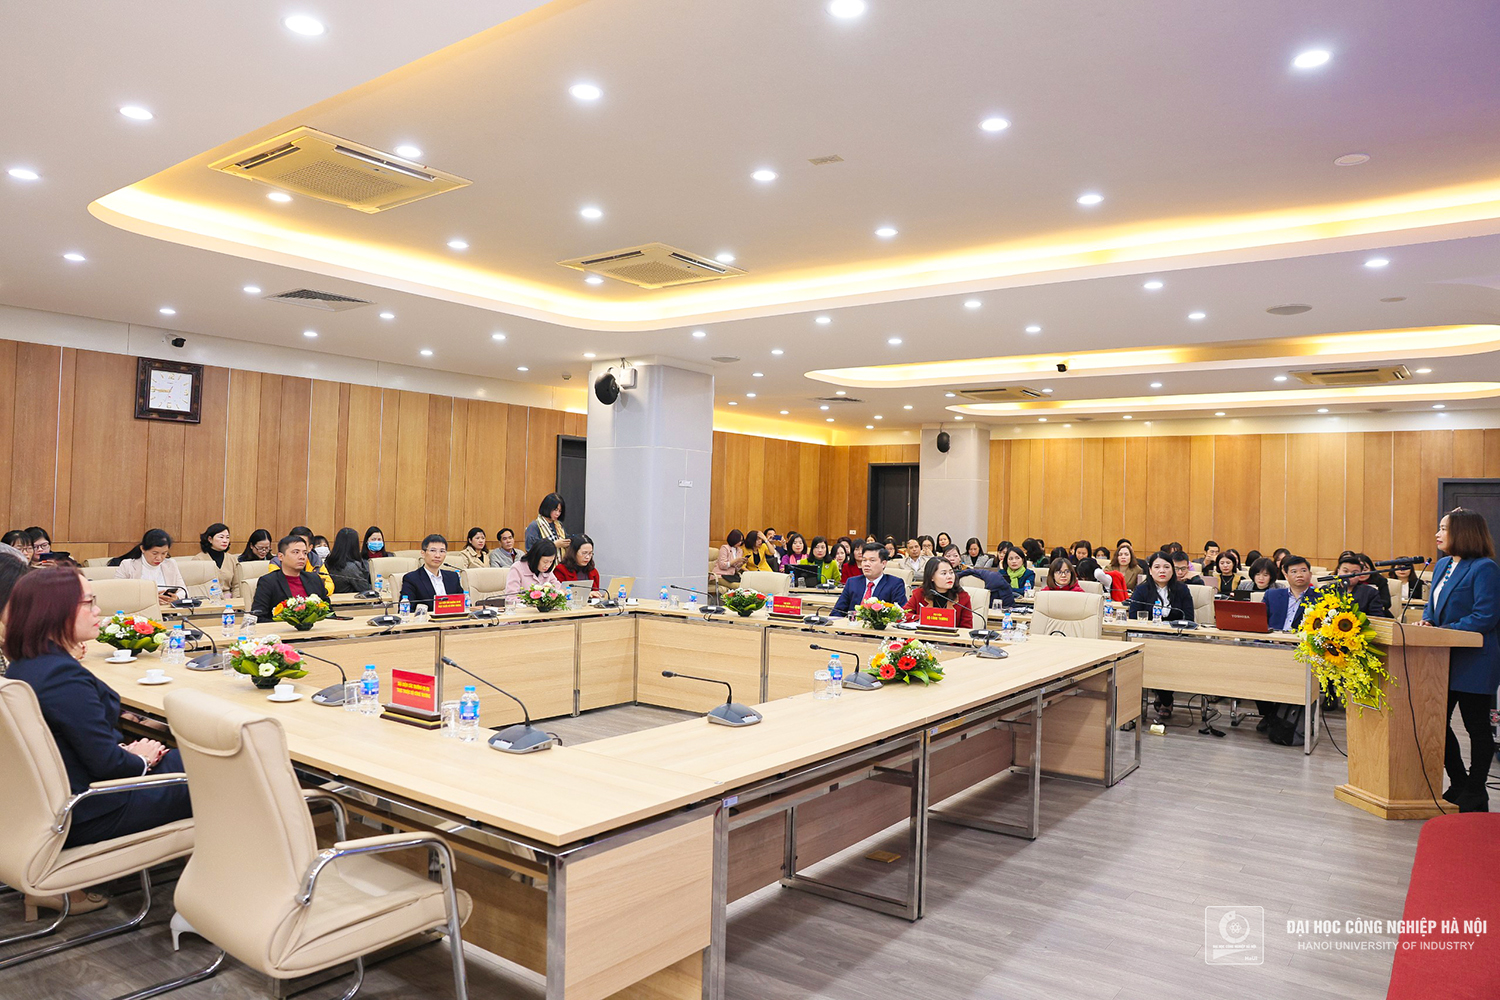 Đại học Công nghiệp Hà Nội chuyển giao 34 bộ chương trình - học liệu tiếng Anh cho các trường trực thuộc Bộ Công Thương